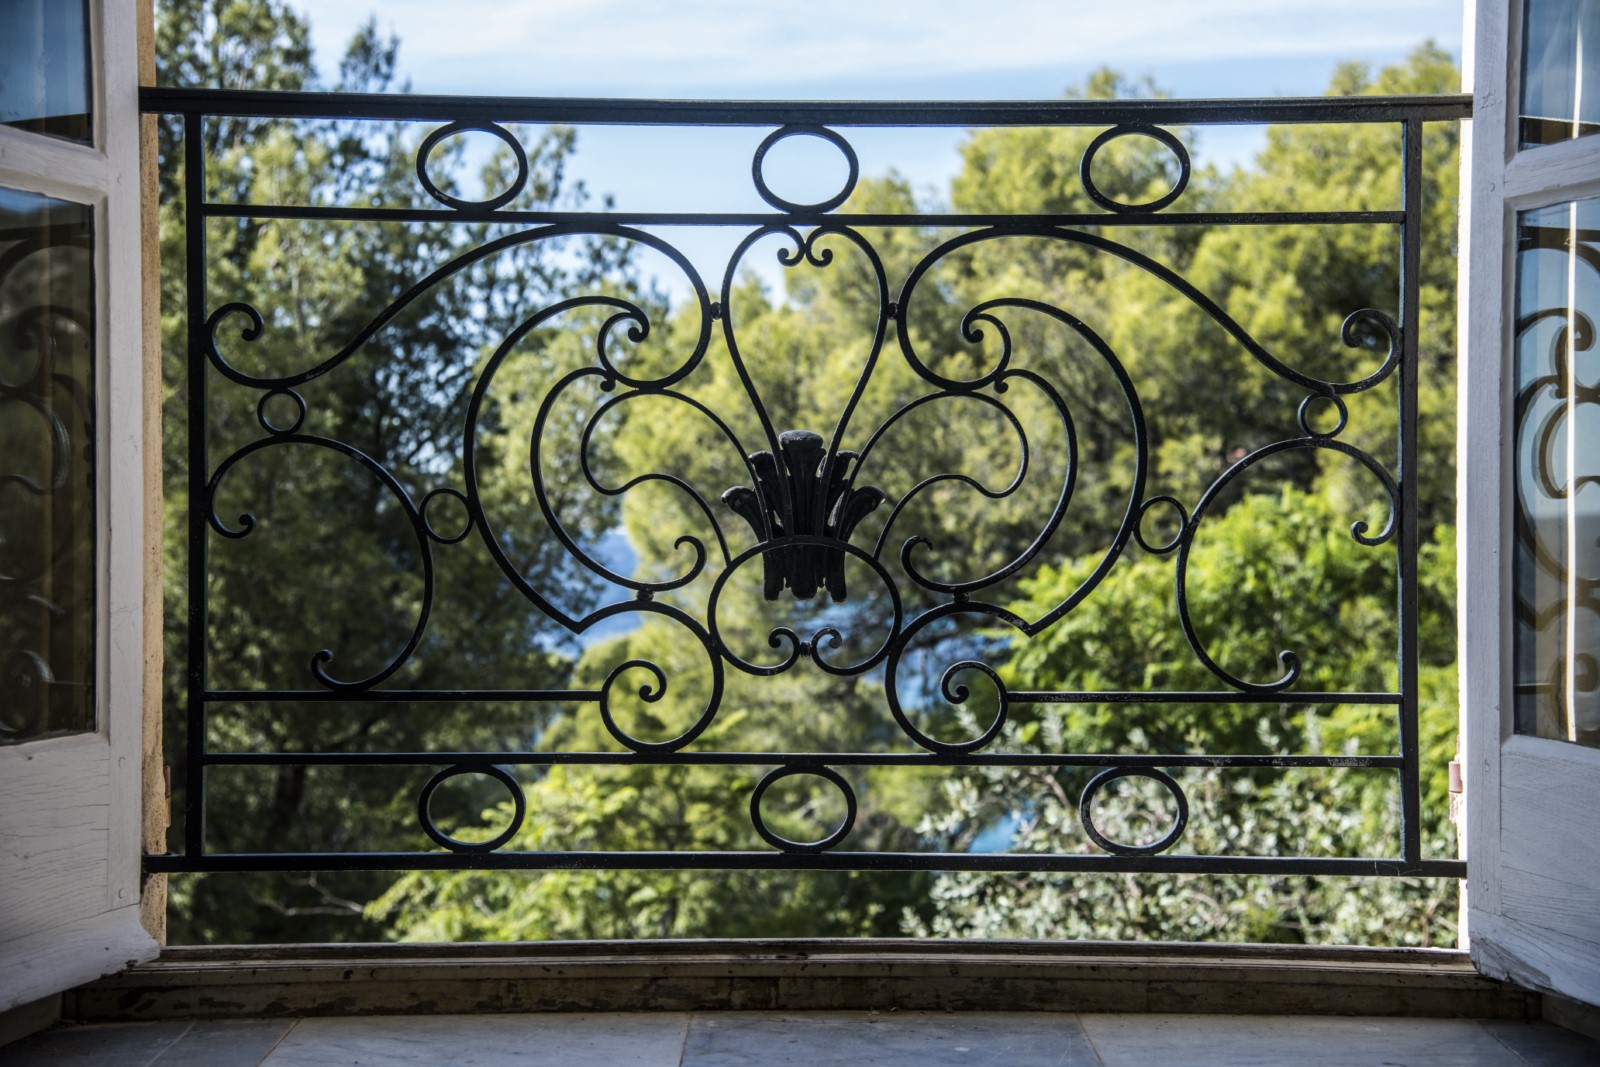 Parlons patrimoine : La restauration des intérieurs de la Villa Rayolet